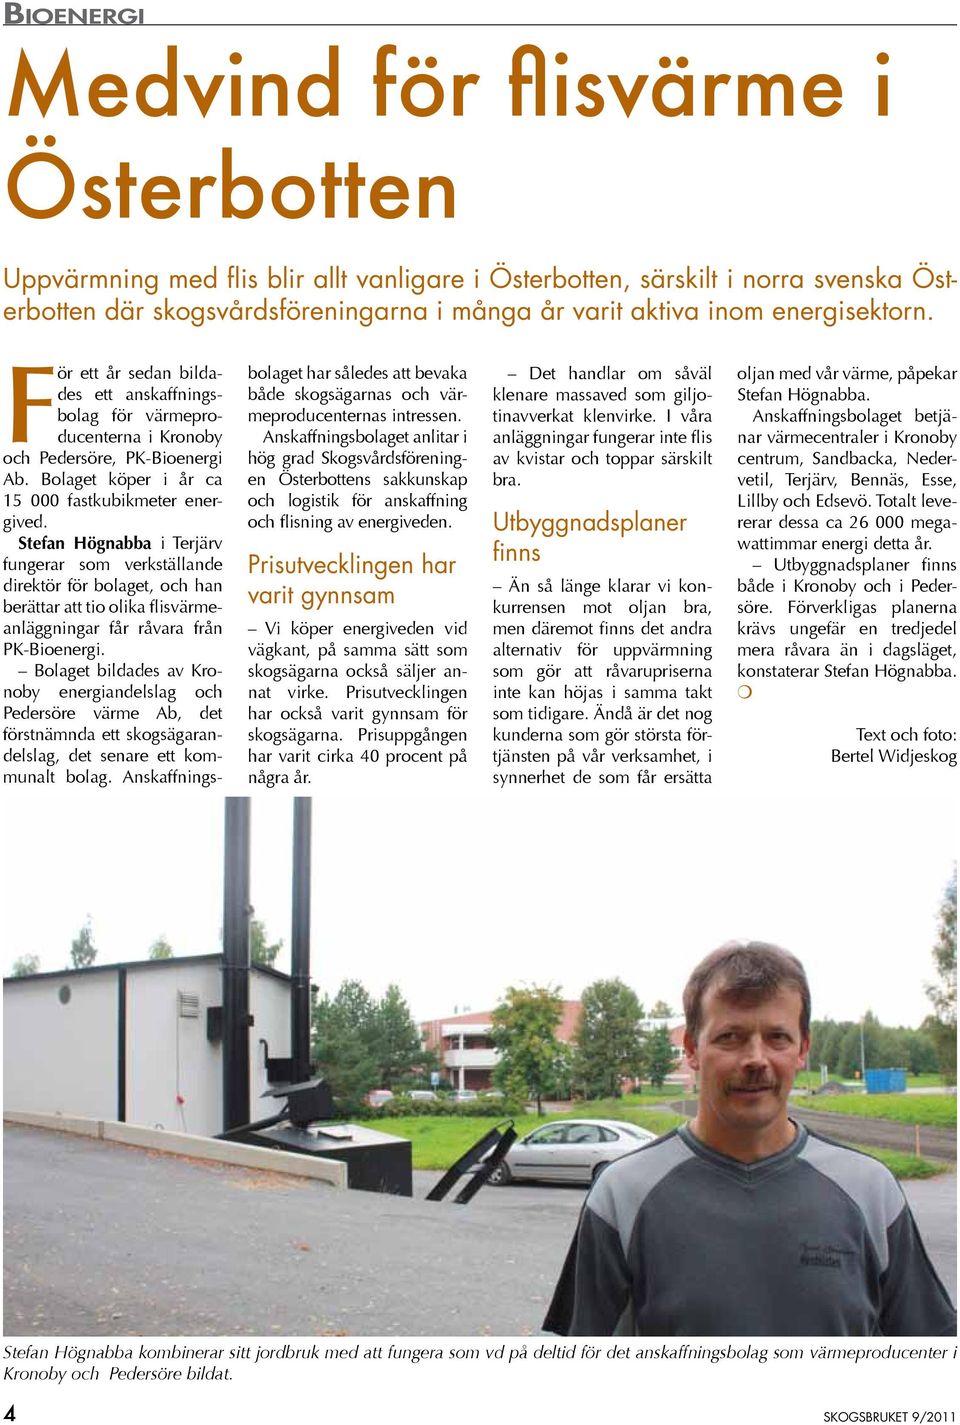 Stefan Högnabba i Terjärv fungerar som verkställande direktör för bolaget, och han berättar att tio olika flisvärmeanläggningar får råvara från PK-Bioenergi.